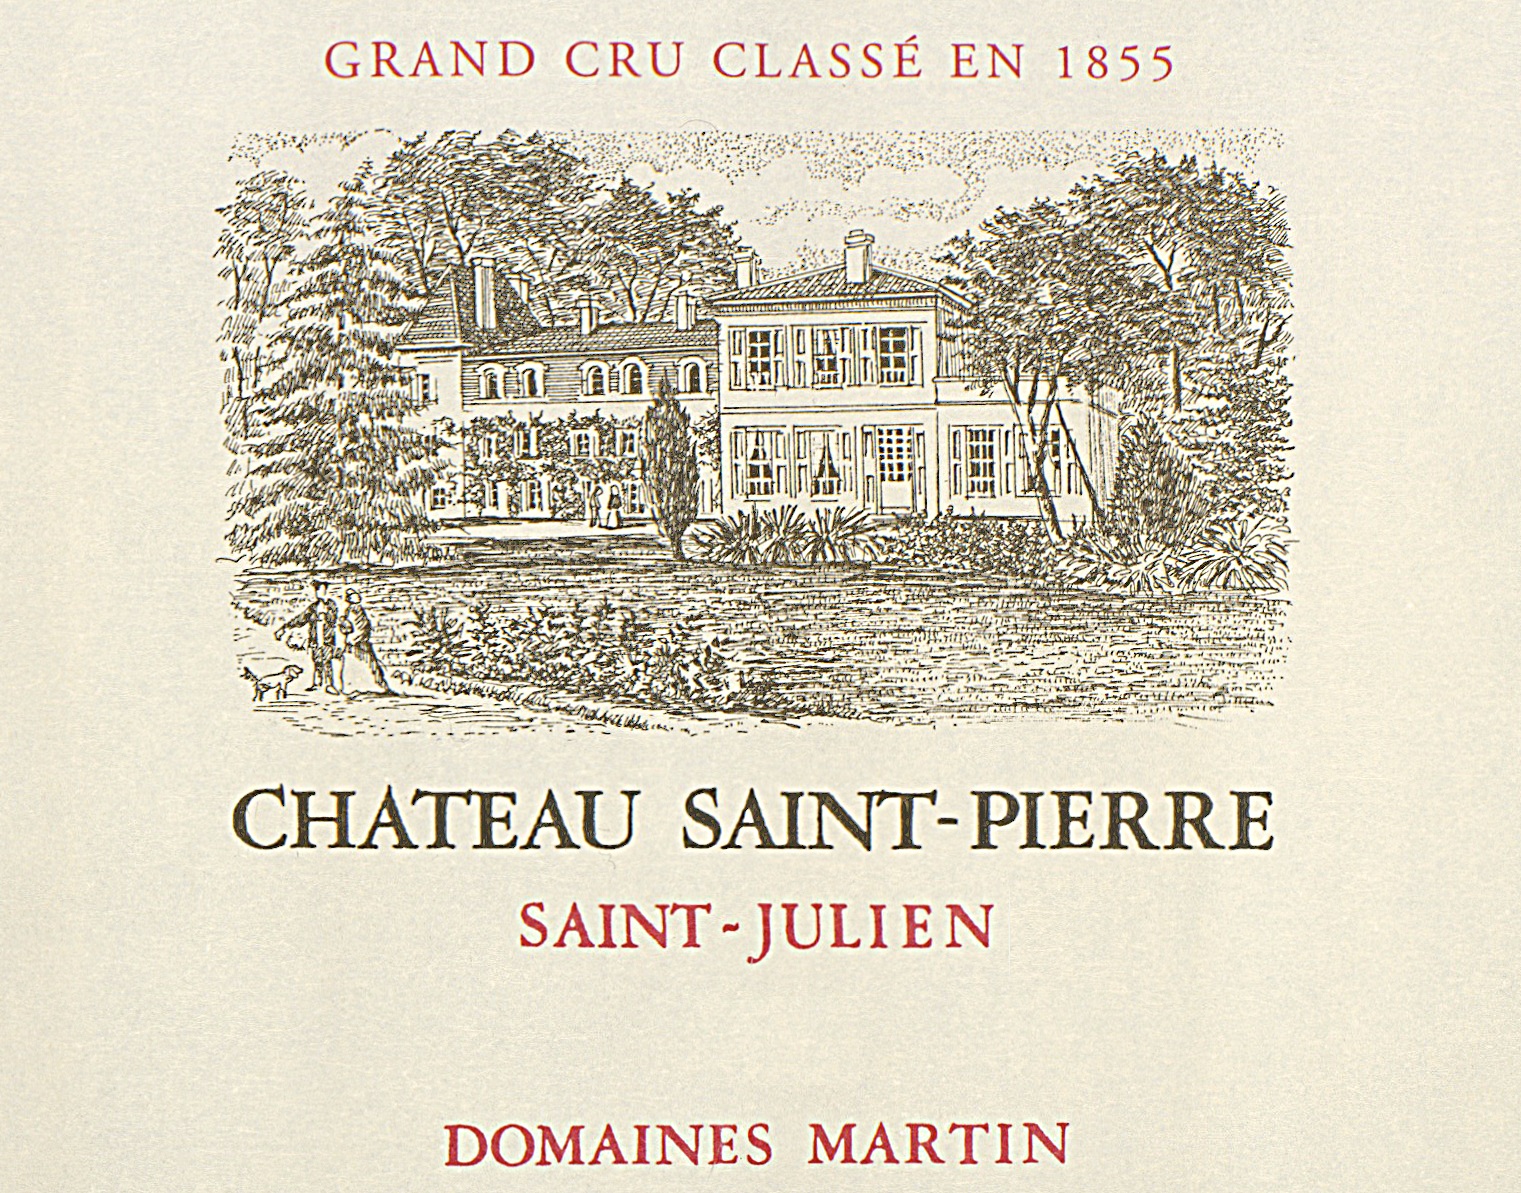 Chateau Saint-Pierre label